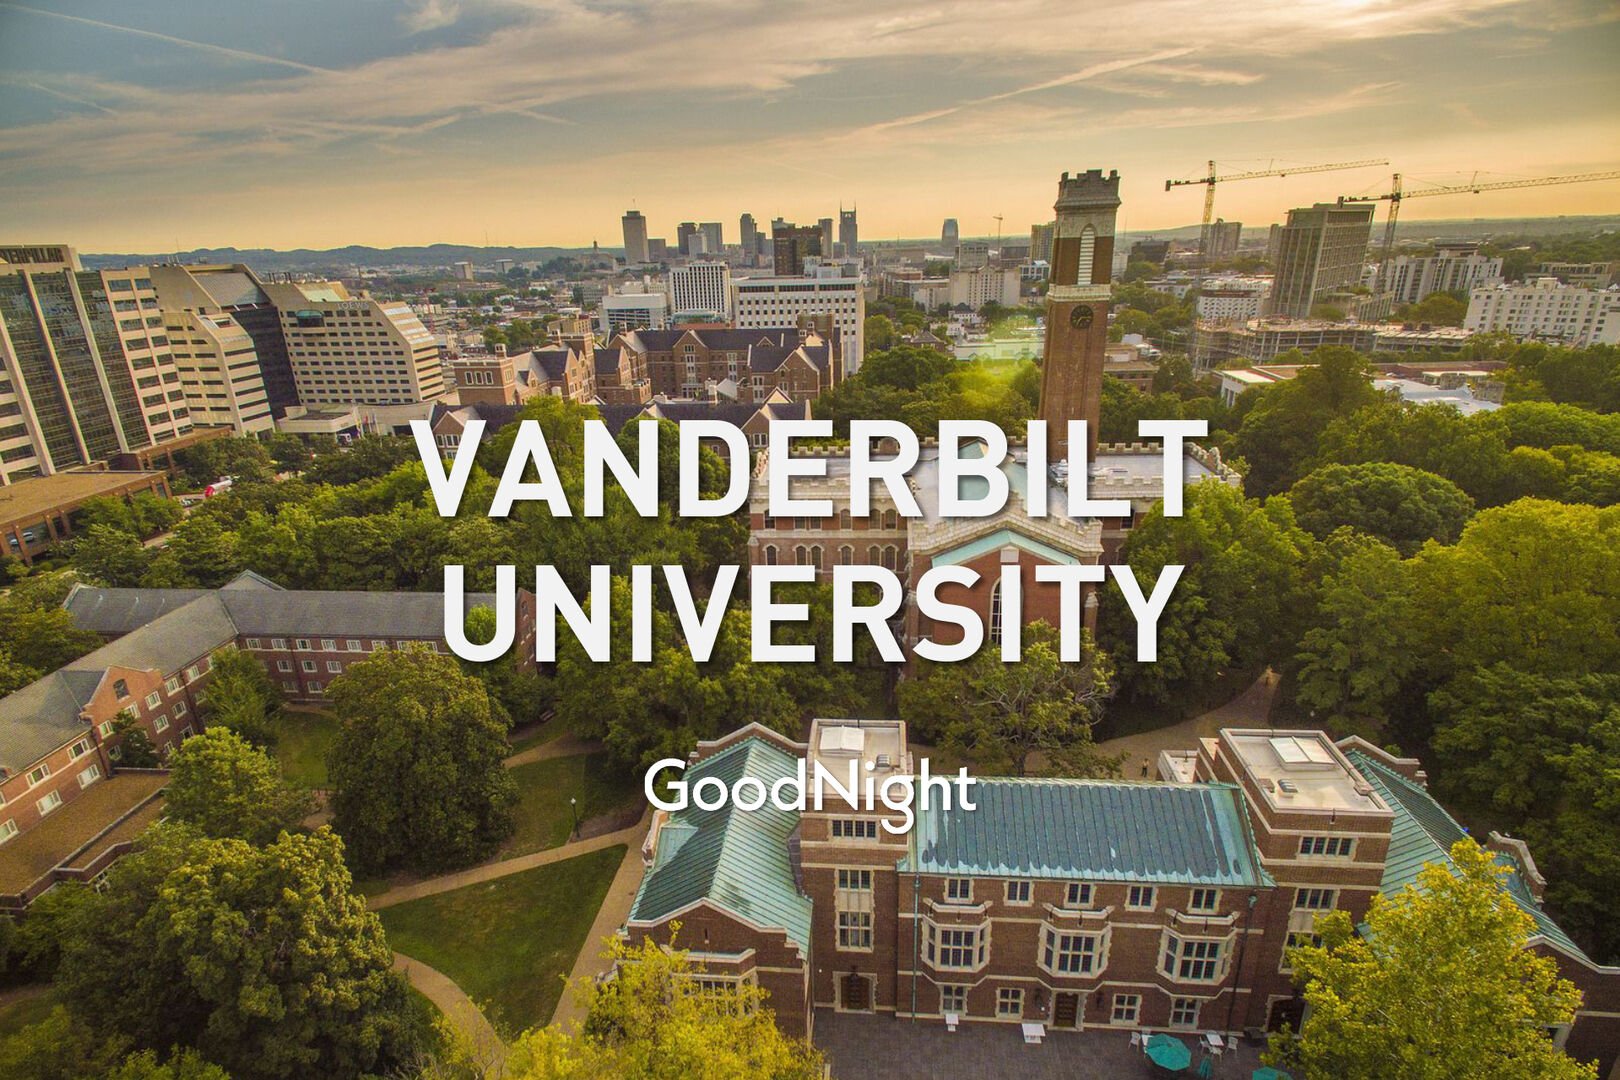 8 mins: Vanderbilt University